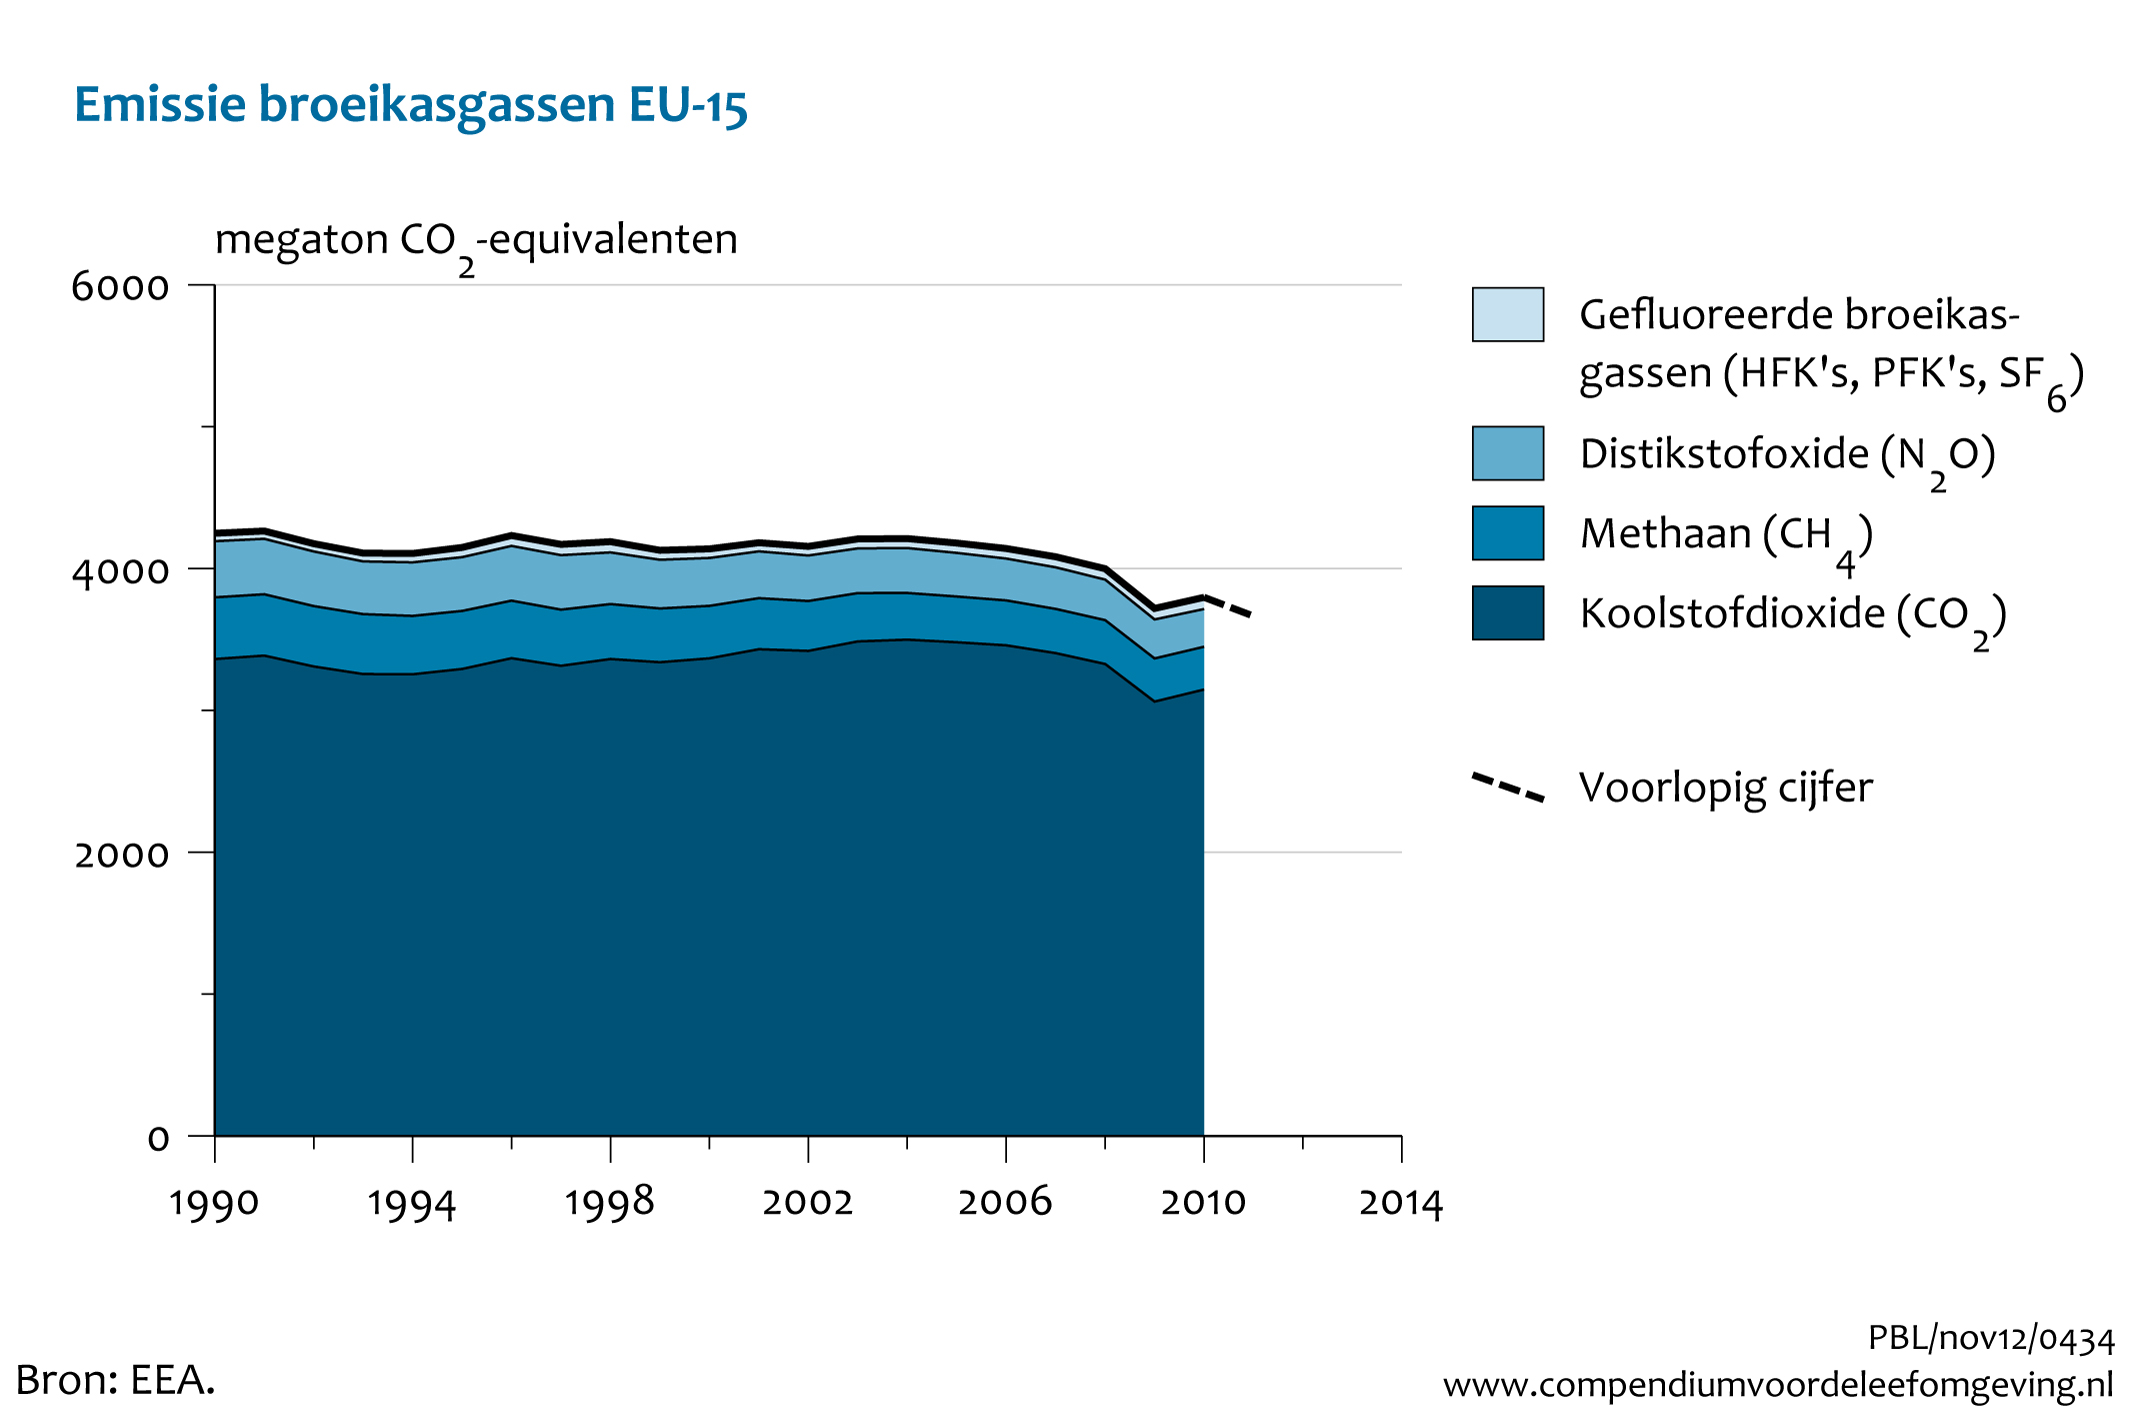 Figuur Uitstoot broeikasgassen in Europa (EU-15), 1990-2011. In de rest van de tekst wordt deze figuur uitgebreider uitgelegd.